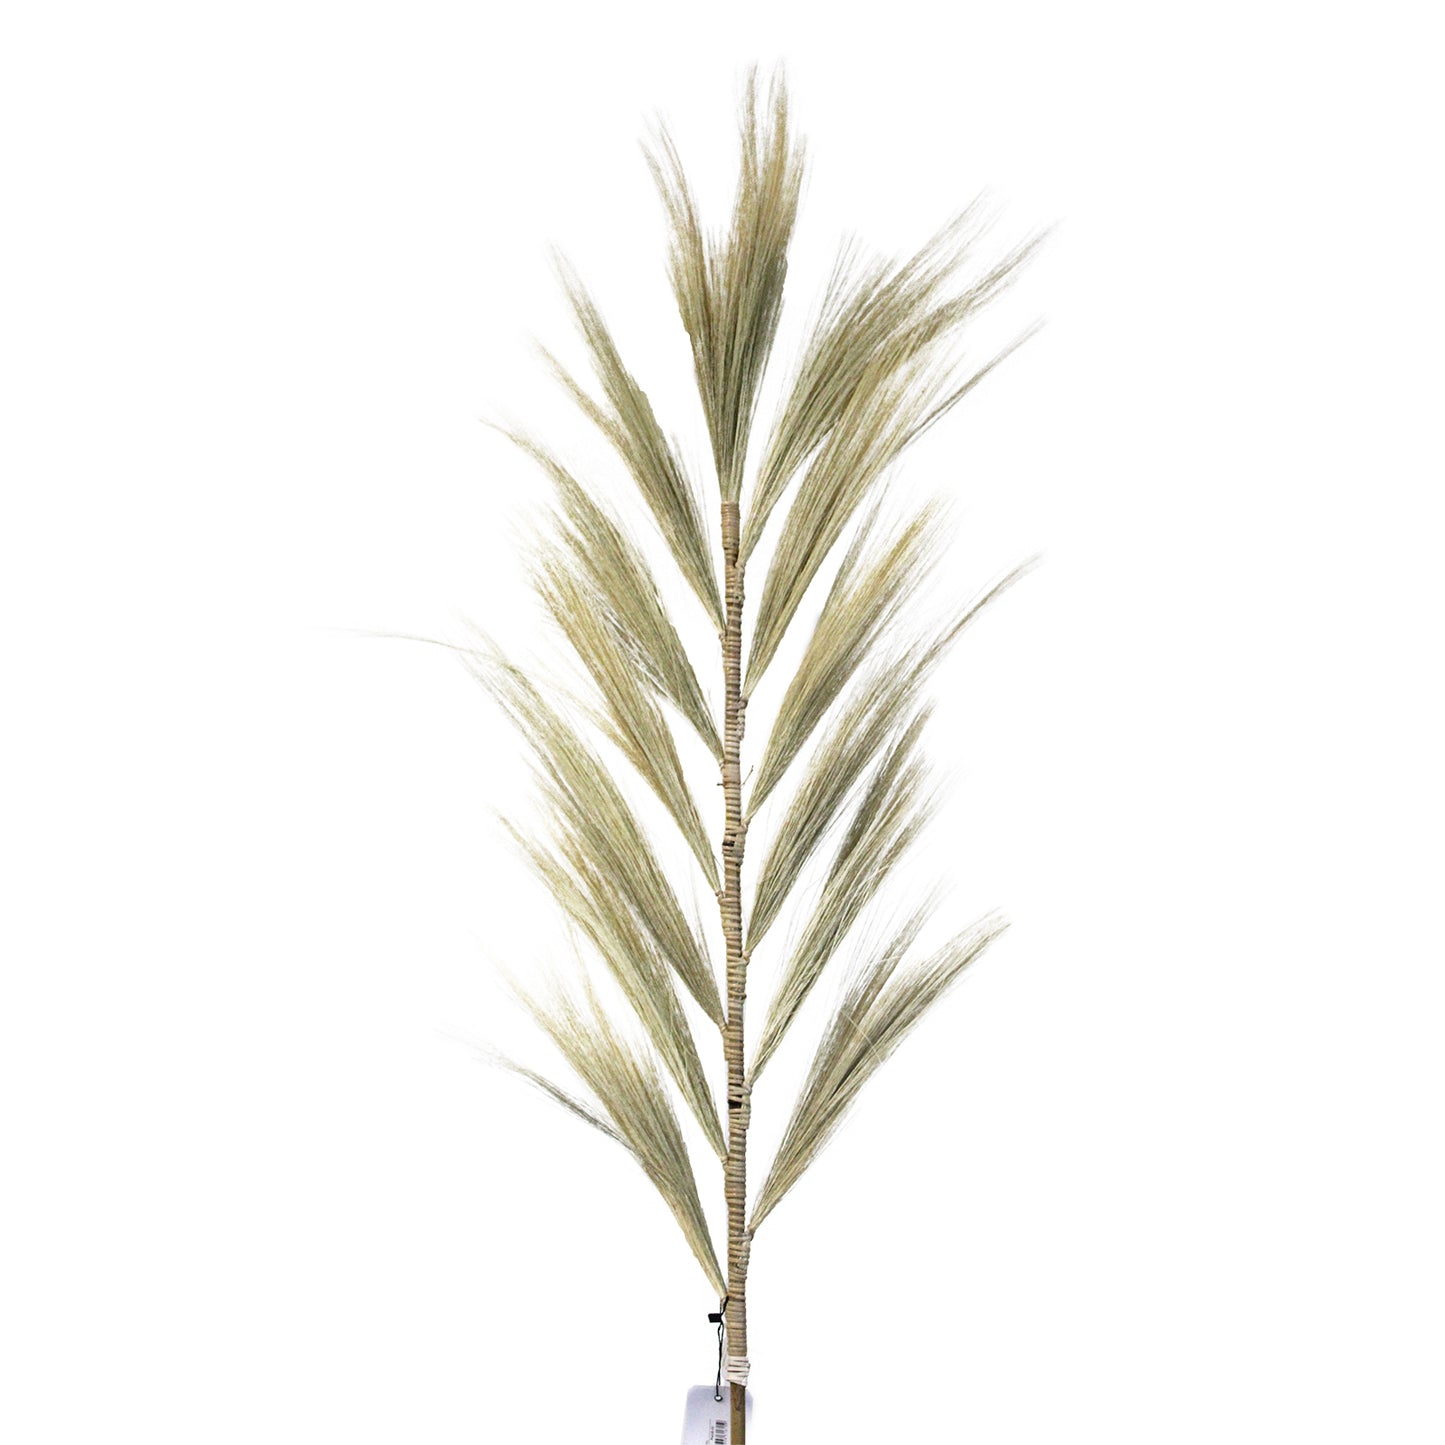 3 x Rayung Grass Blond - 1.6m